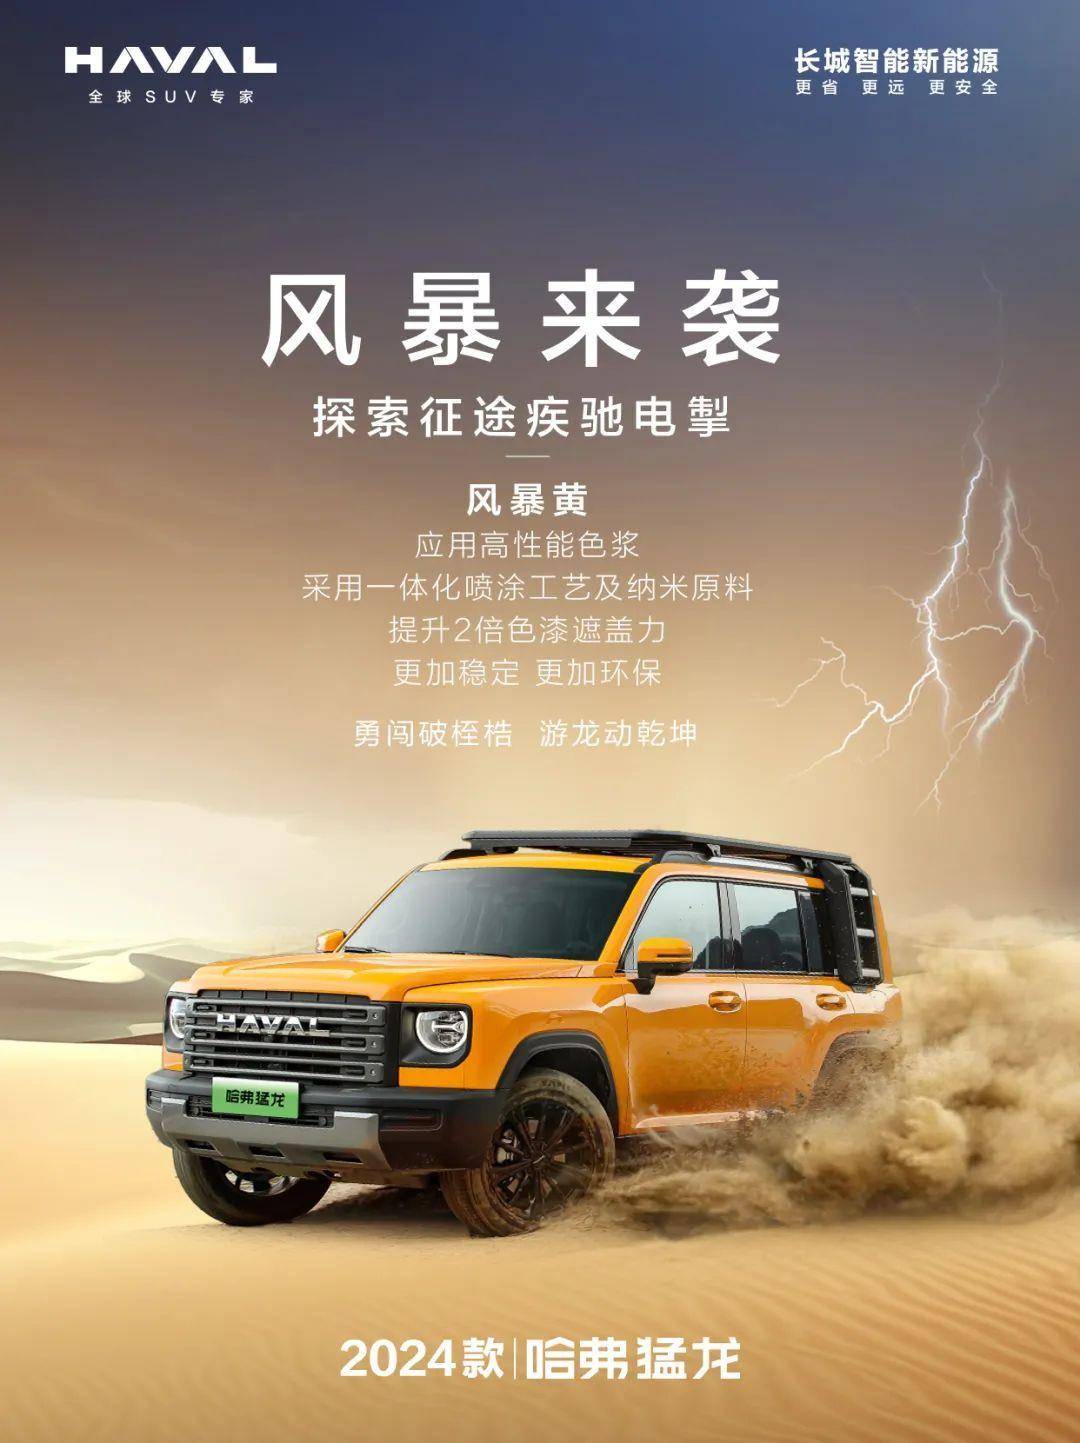 预计北京车展将发布全新配色的哈弗猛龙_搜狐汽车_ Sohu.com。